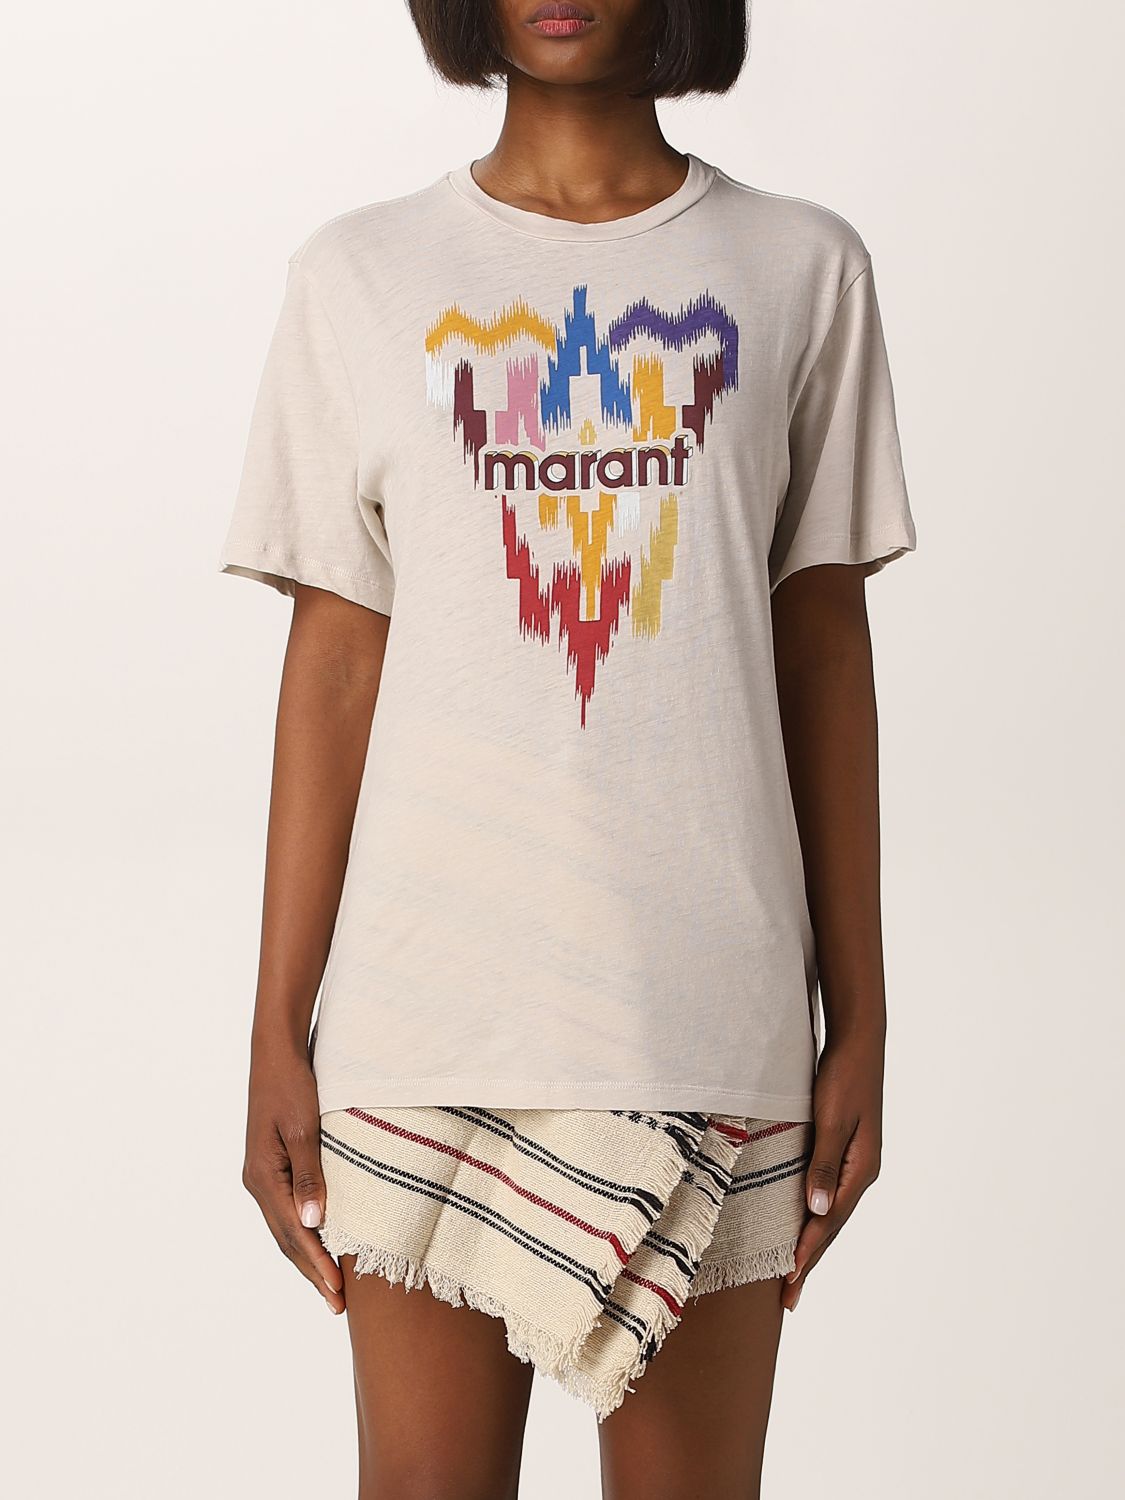 Isabel Marant Etoile cotton t-shirt with logo